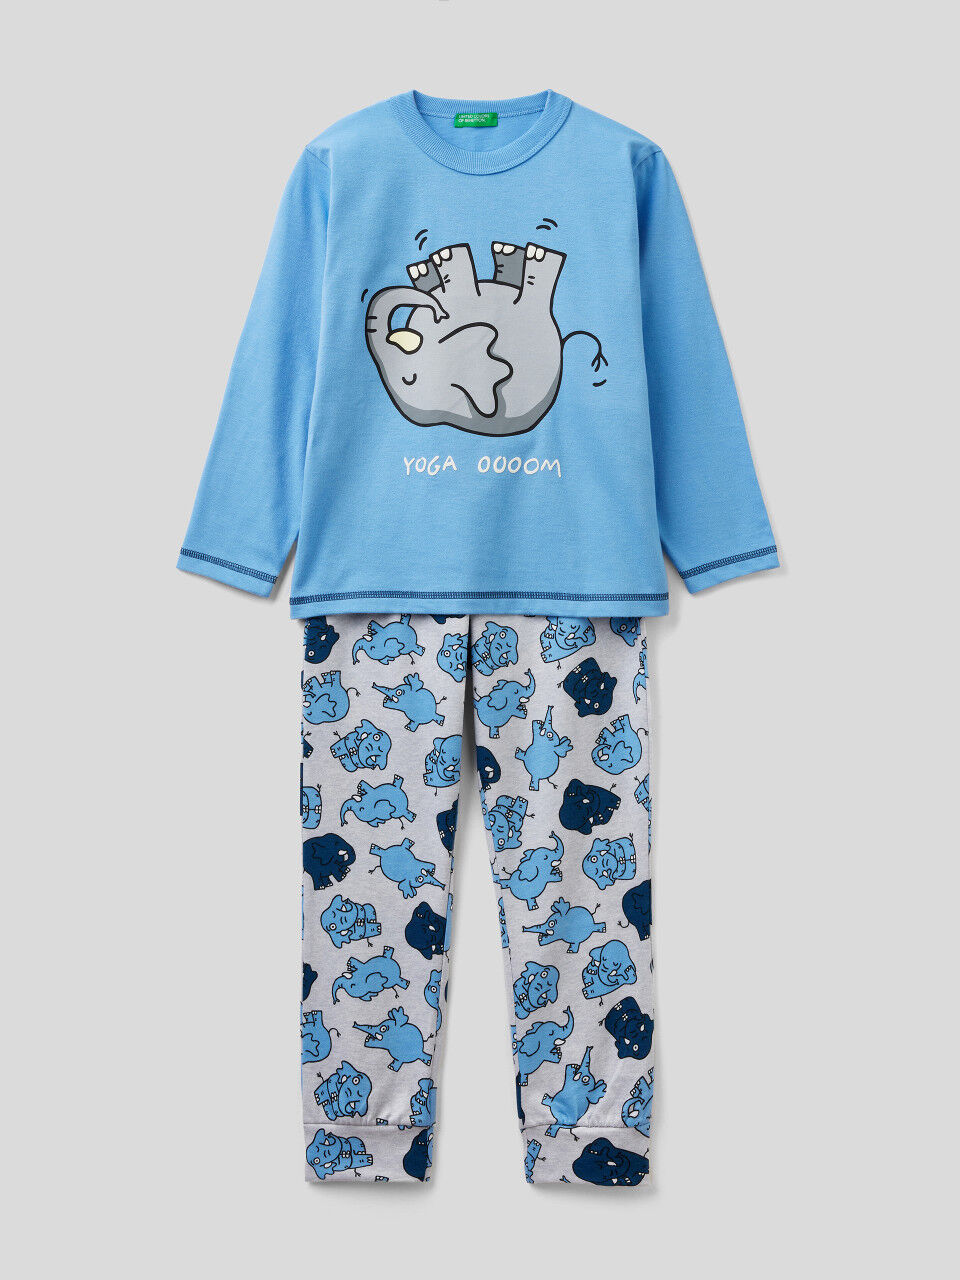 Langer Pyjama in 100% Baumwolle mit Print